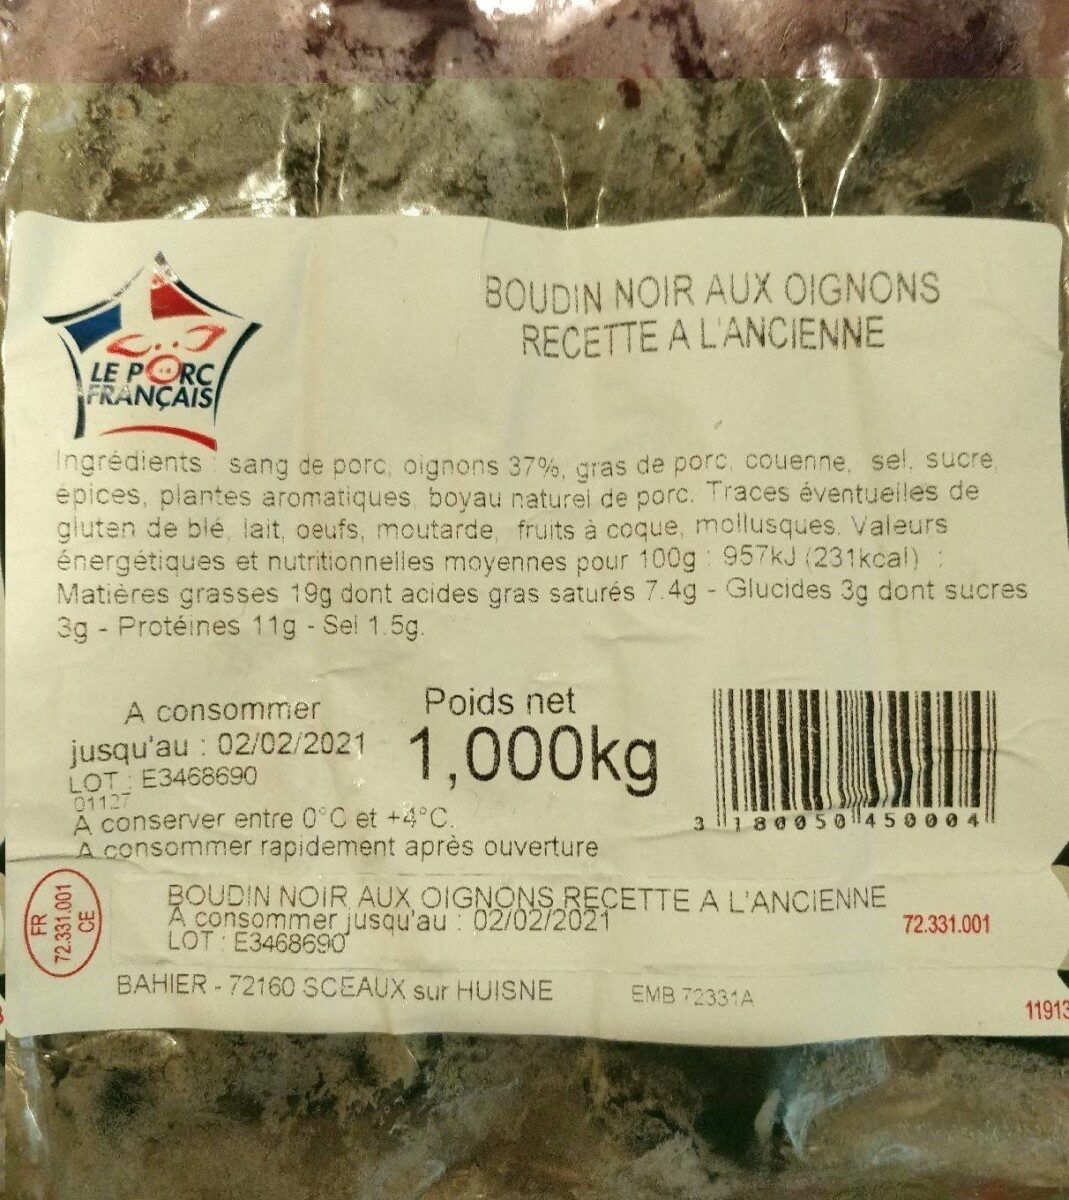 Boudin noir aux oignons recette à l'ancienne - Producto - fr